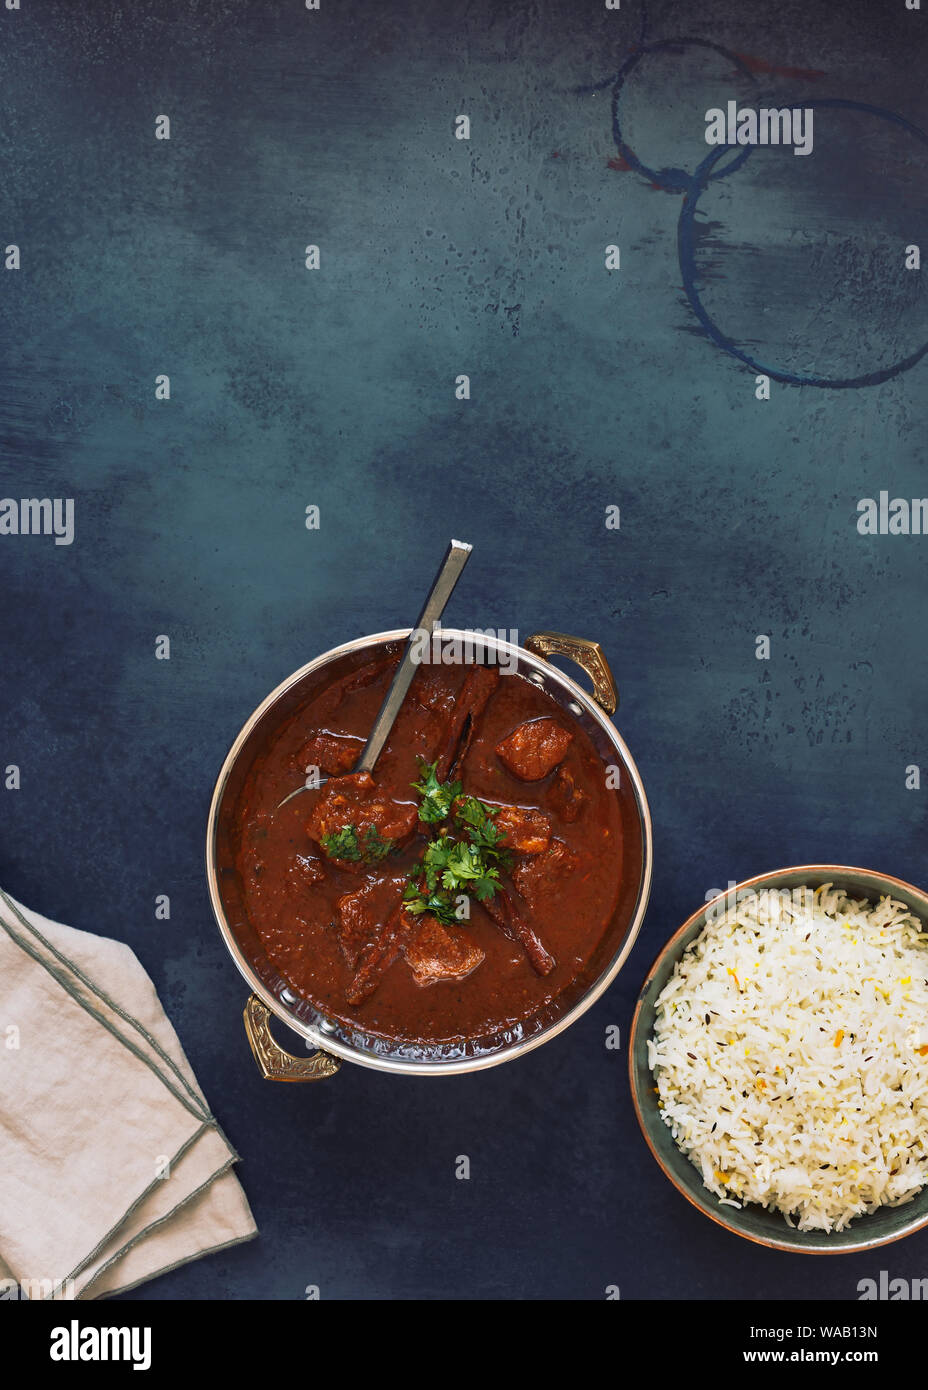 Agnello rogan josh curry, autentica del Kashmir carne di agnello al curry, servito con riso pulao e guarnita con coriandolo, vista dall'alto Foto Stock